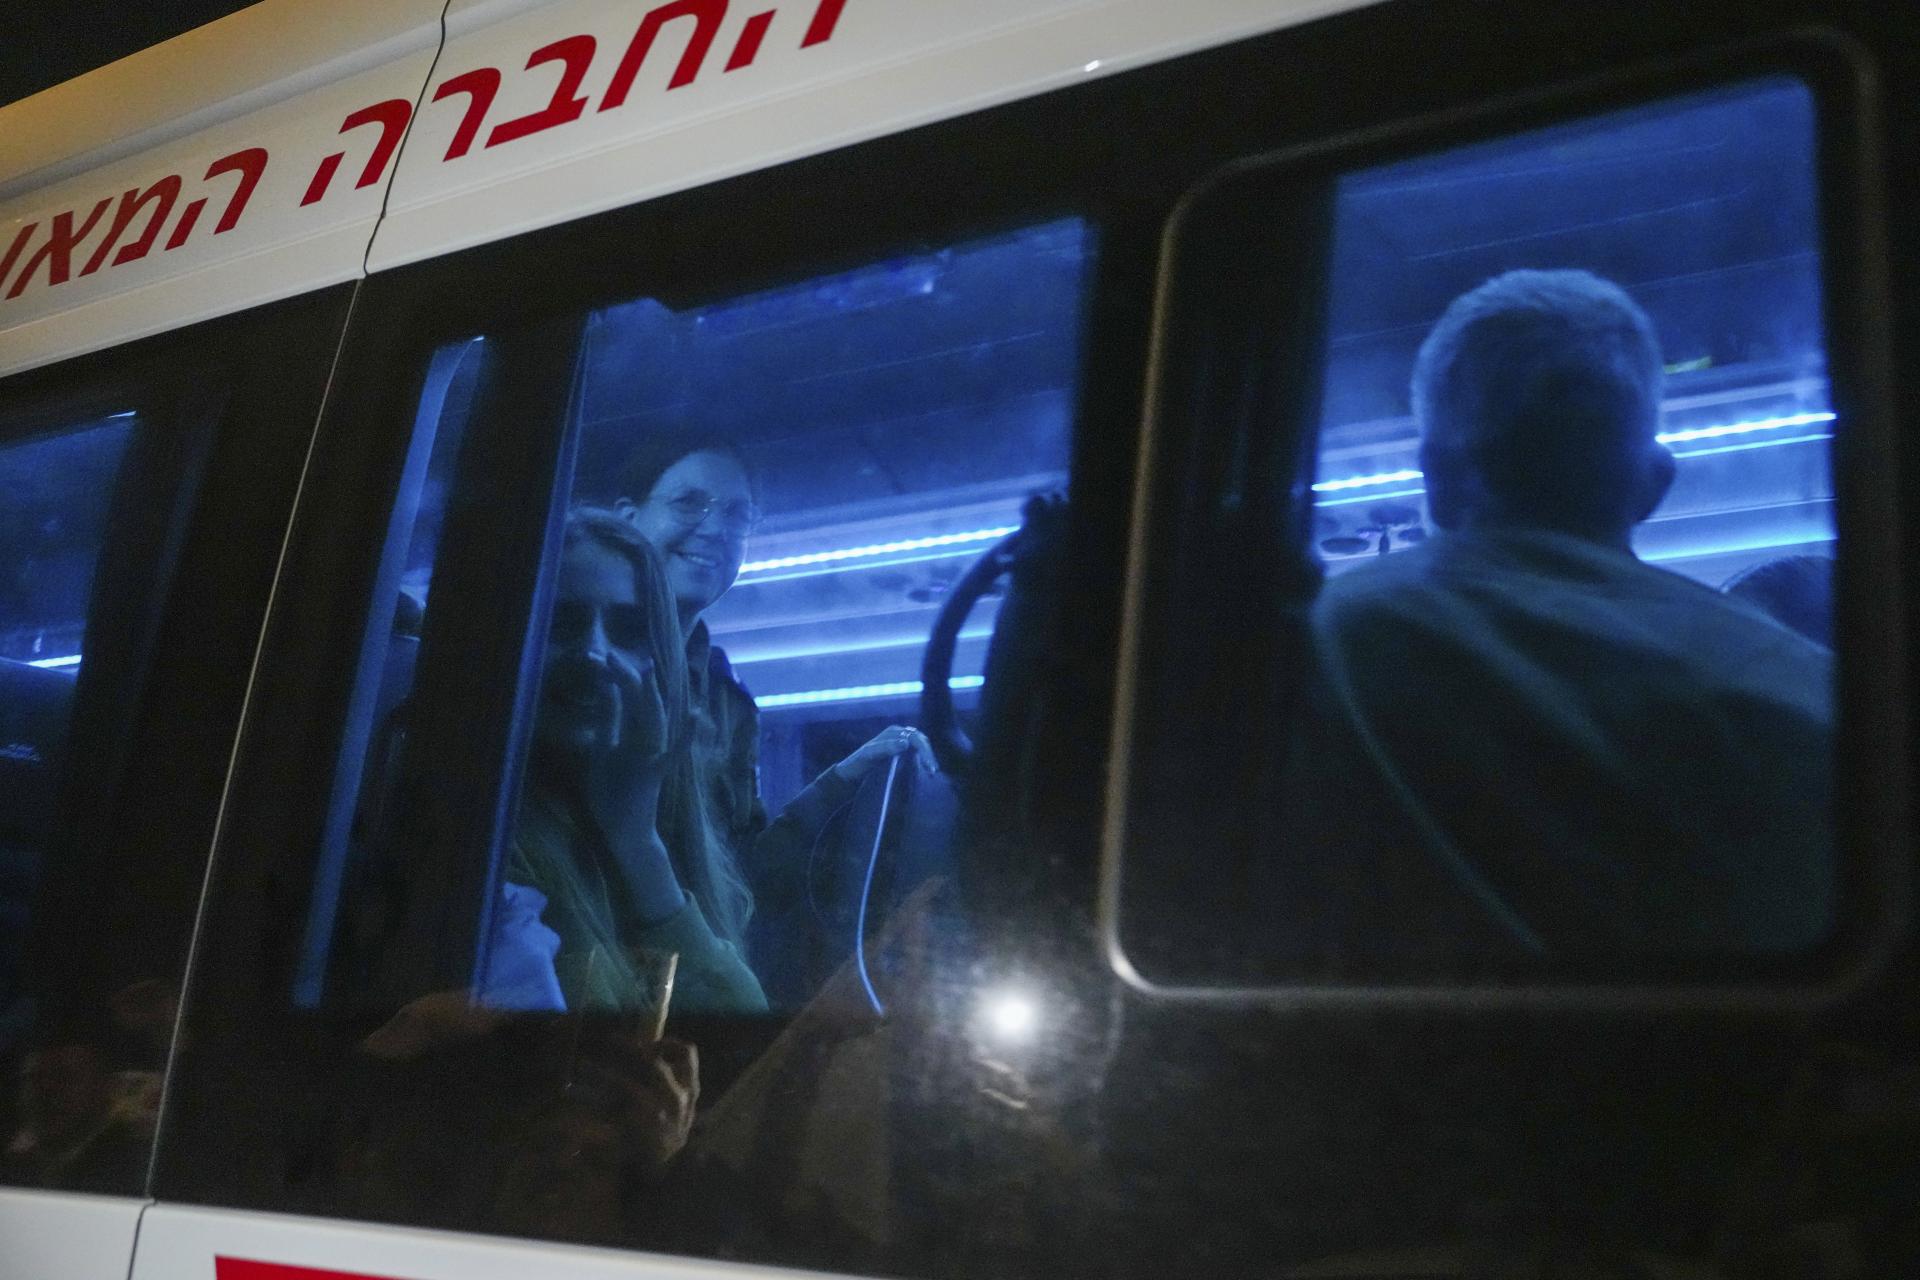 Hamas prepustil ďalších dvoch izraelských rukojemníkov, mladú ženu militanti predtým postrelili